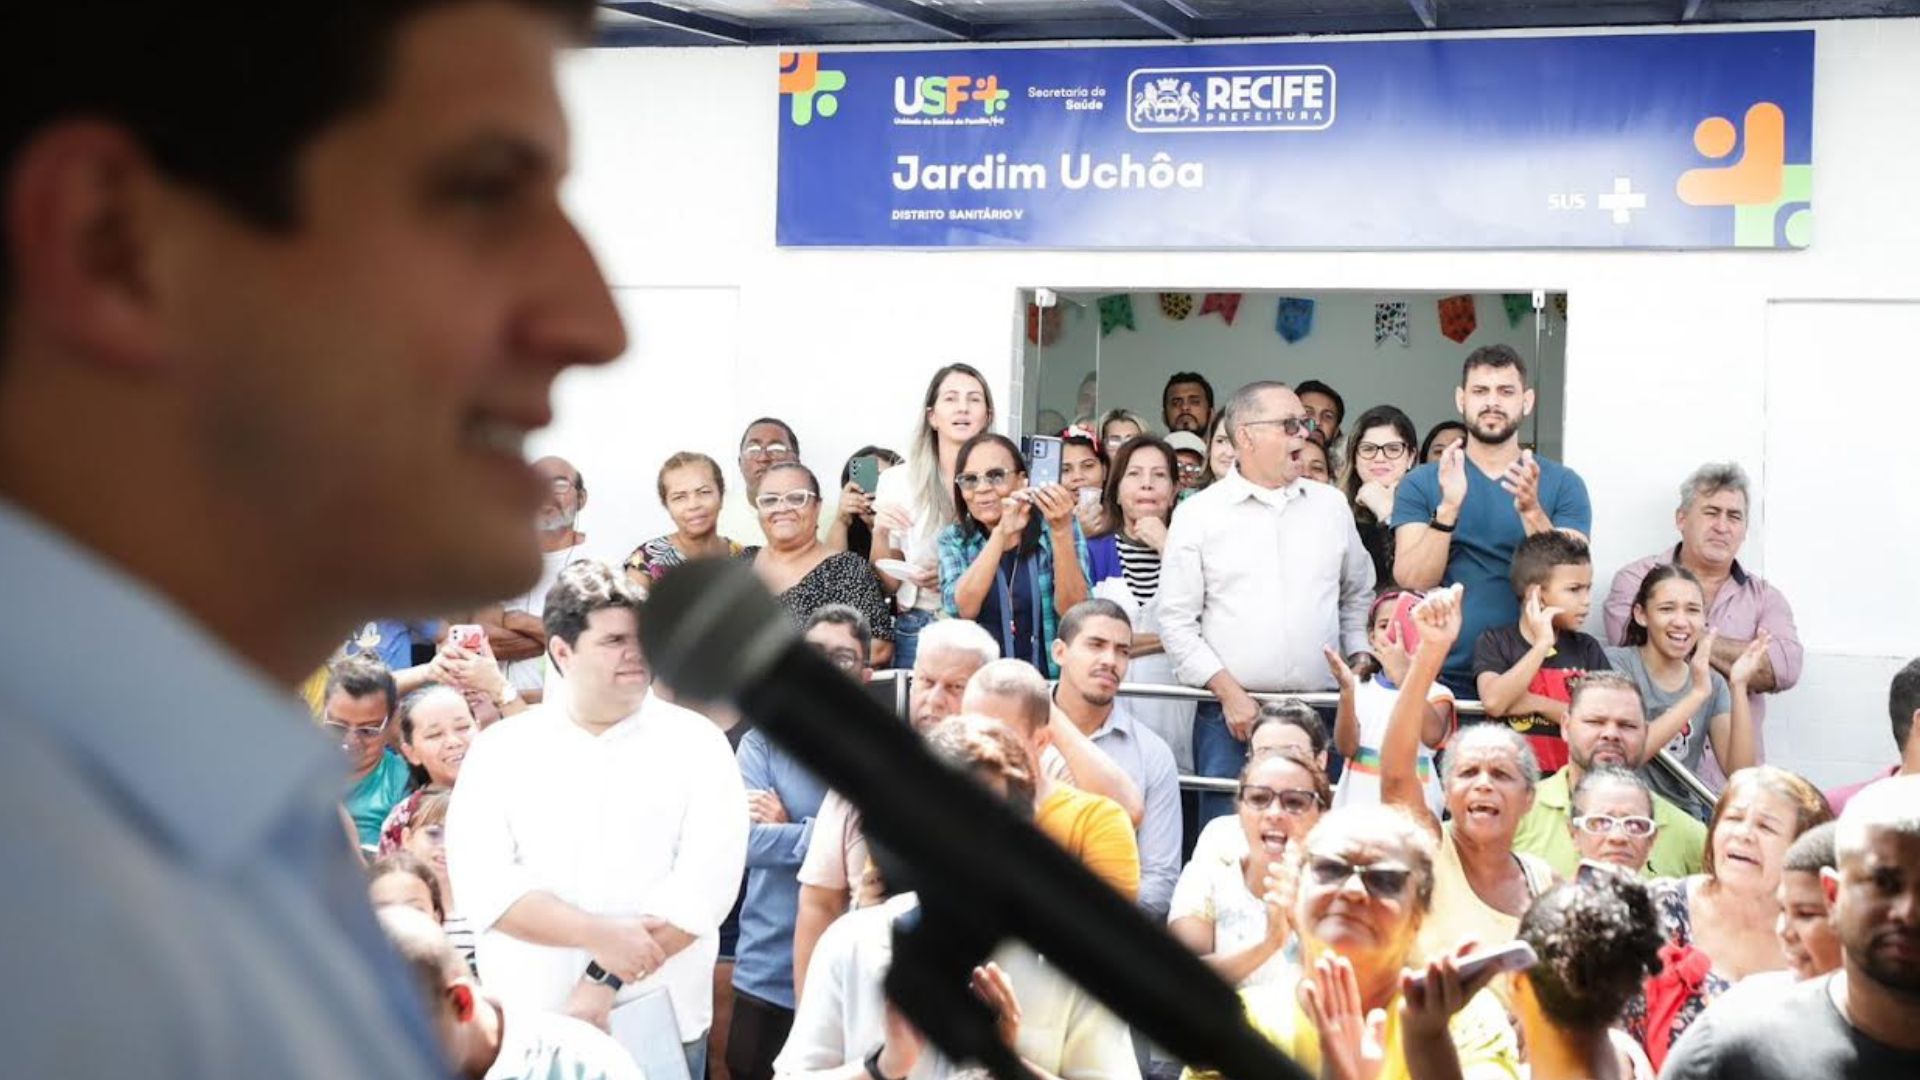 Prefeitura do Recife reinaugura Unidade de Saúde da Família Jardim Uchôa após investimento de R$ 560 MIL